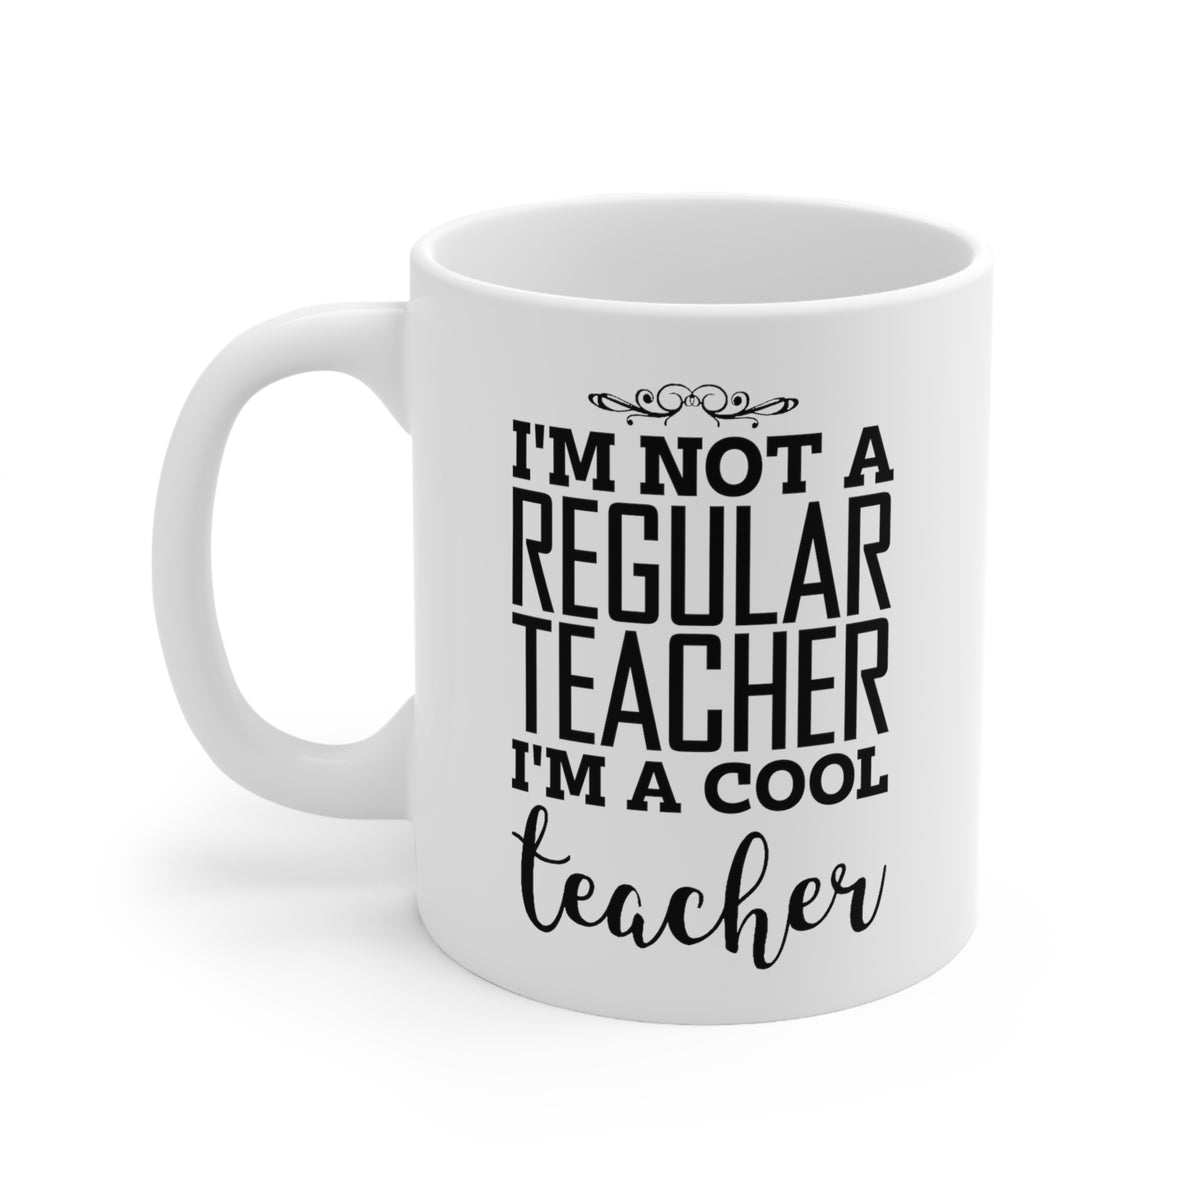 Teacher Gifts - I'm Not A Regular Teacher. I'm A Cool Teacher - Perfect Funny Mugs For Men & Women